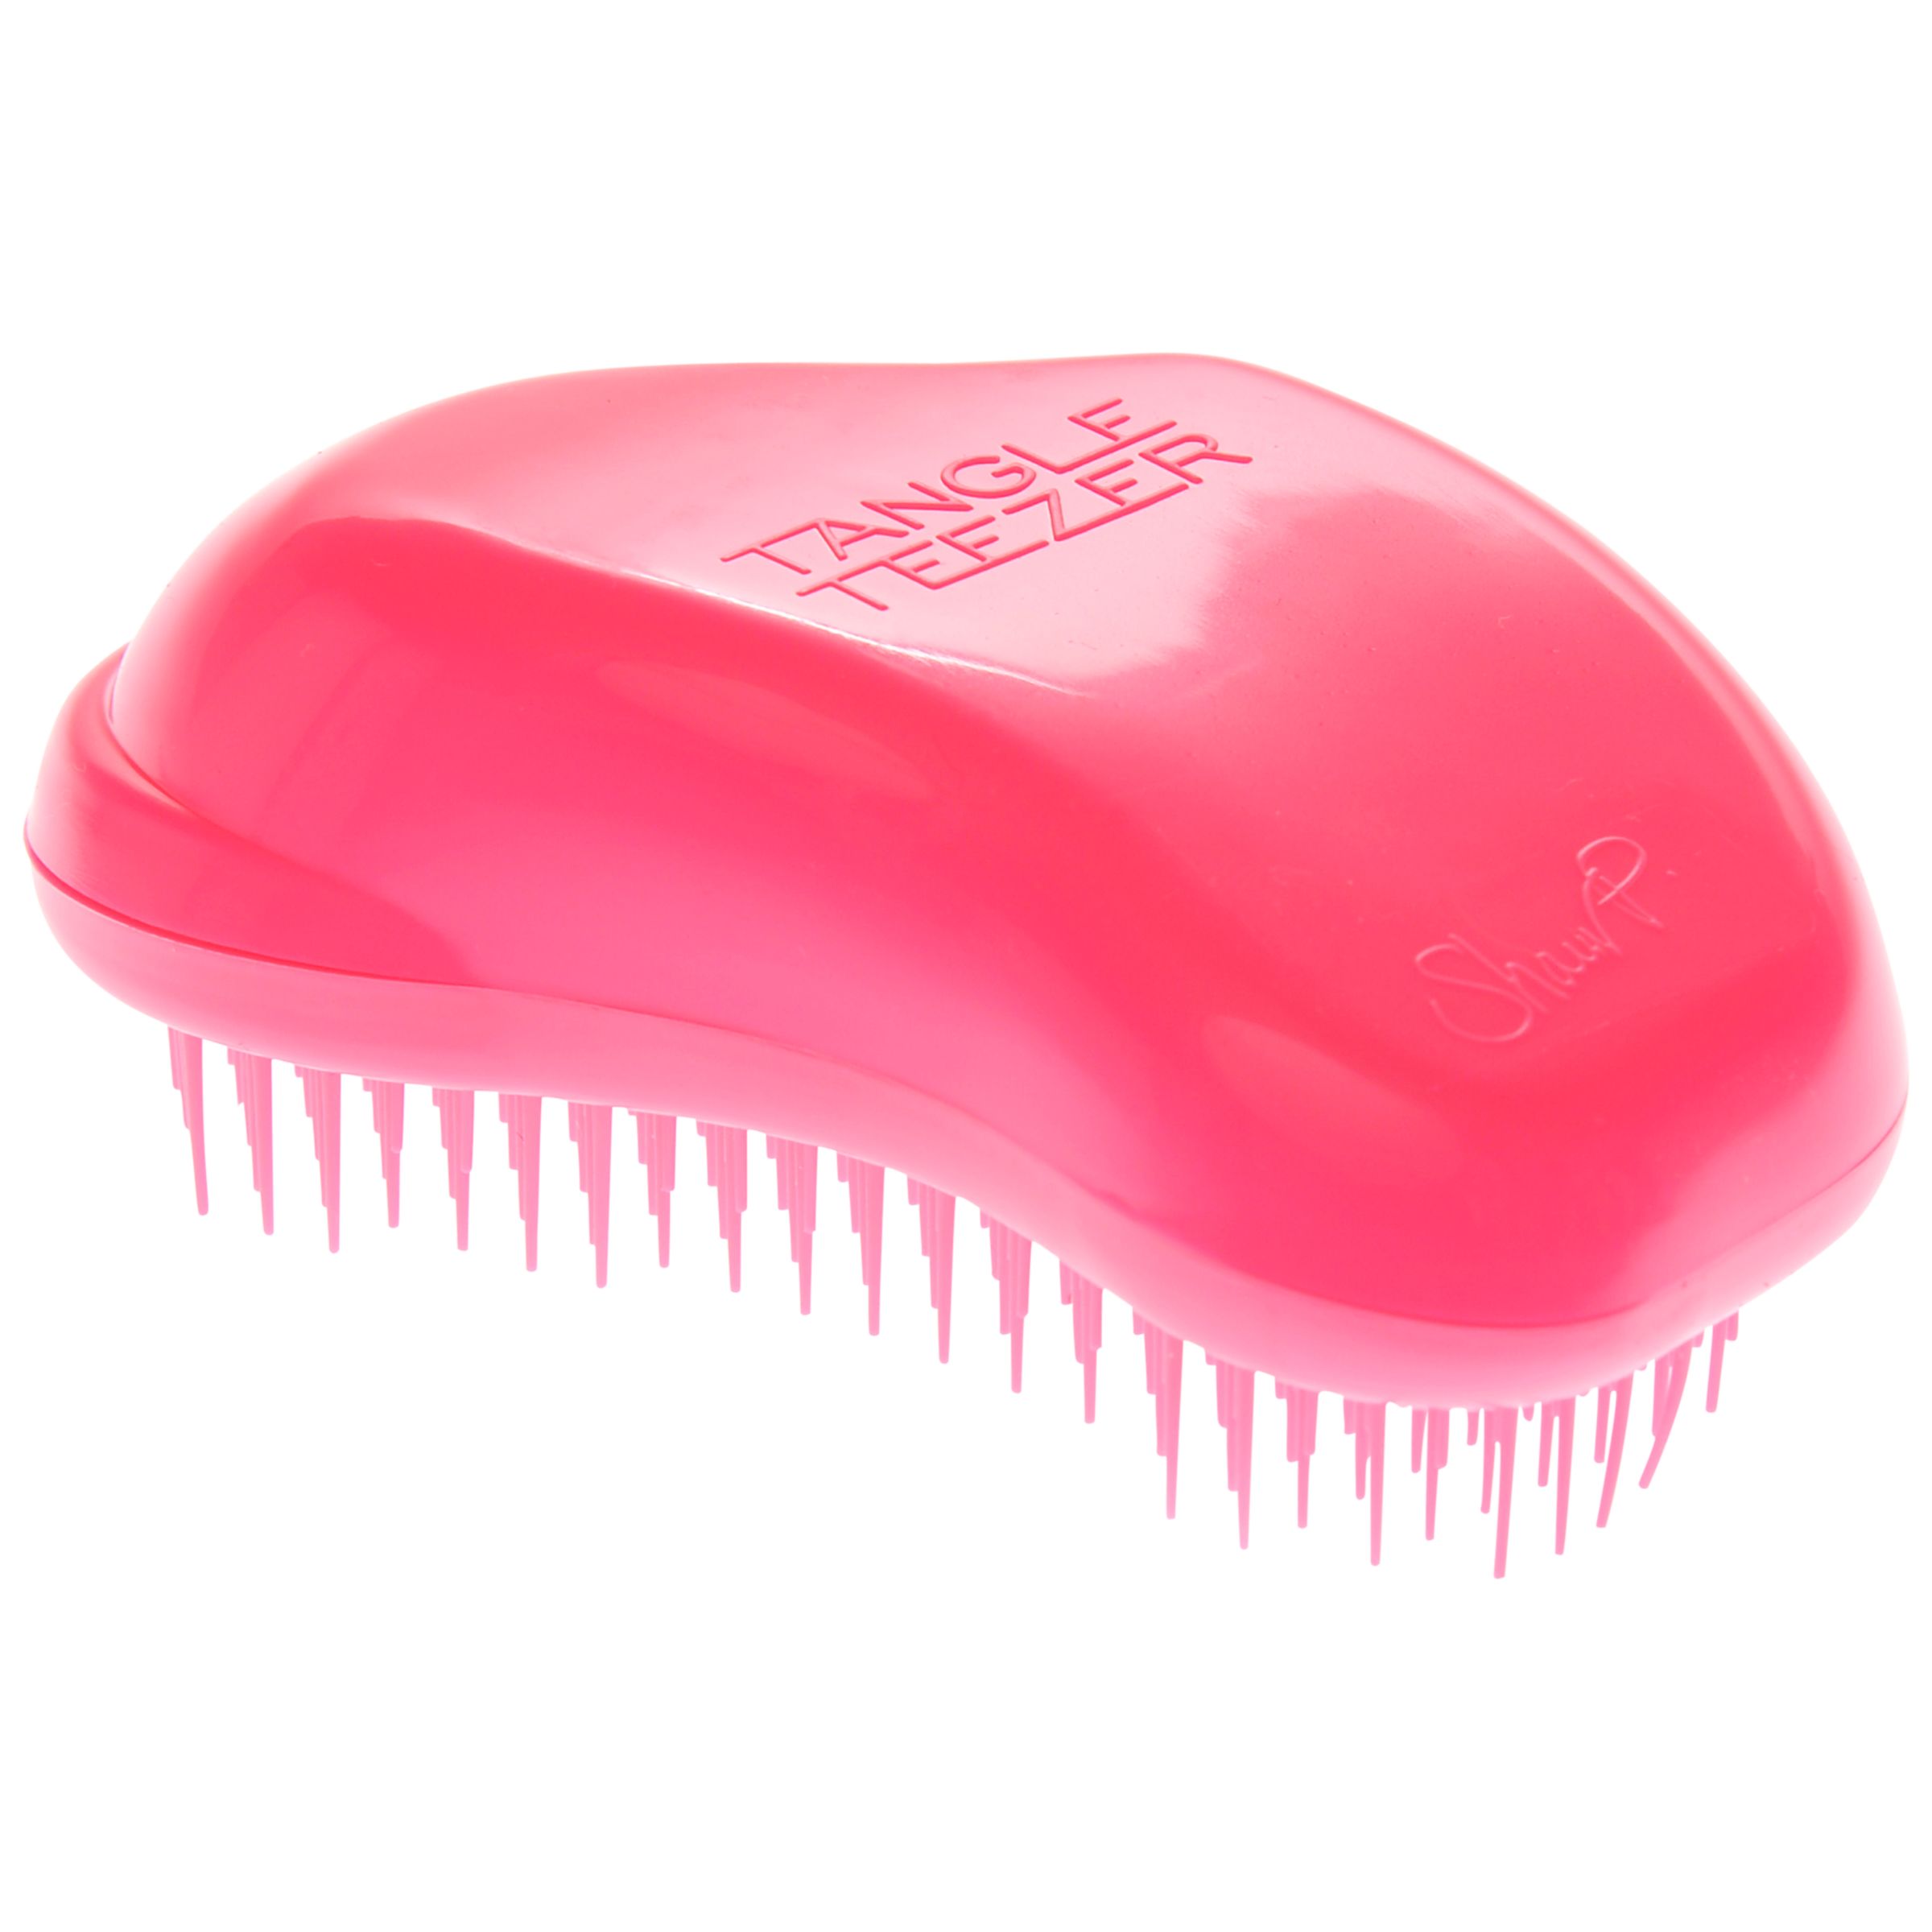 Tangle Teezer Detangling Hair Brush, Pink at John Lewis & Partners